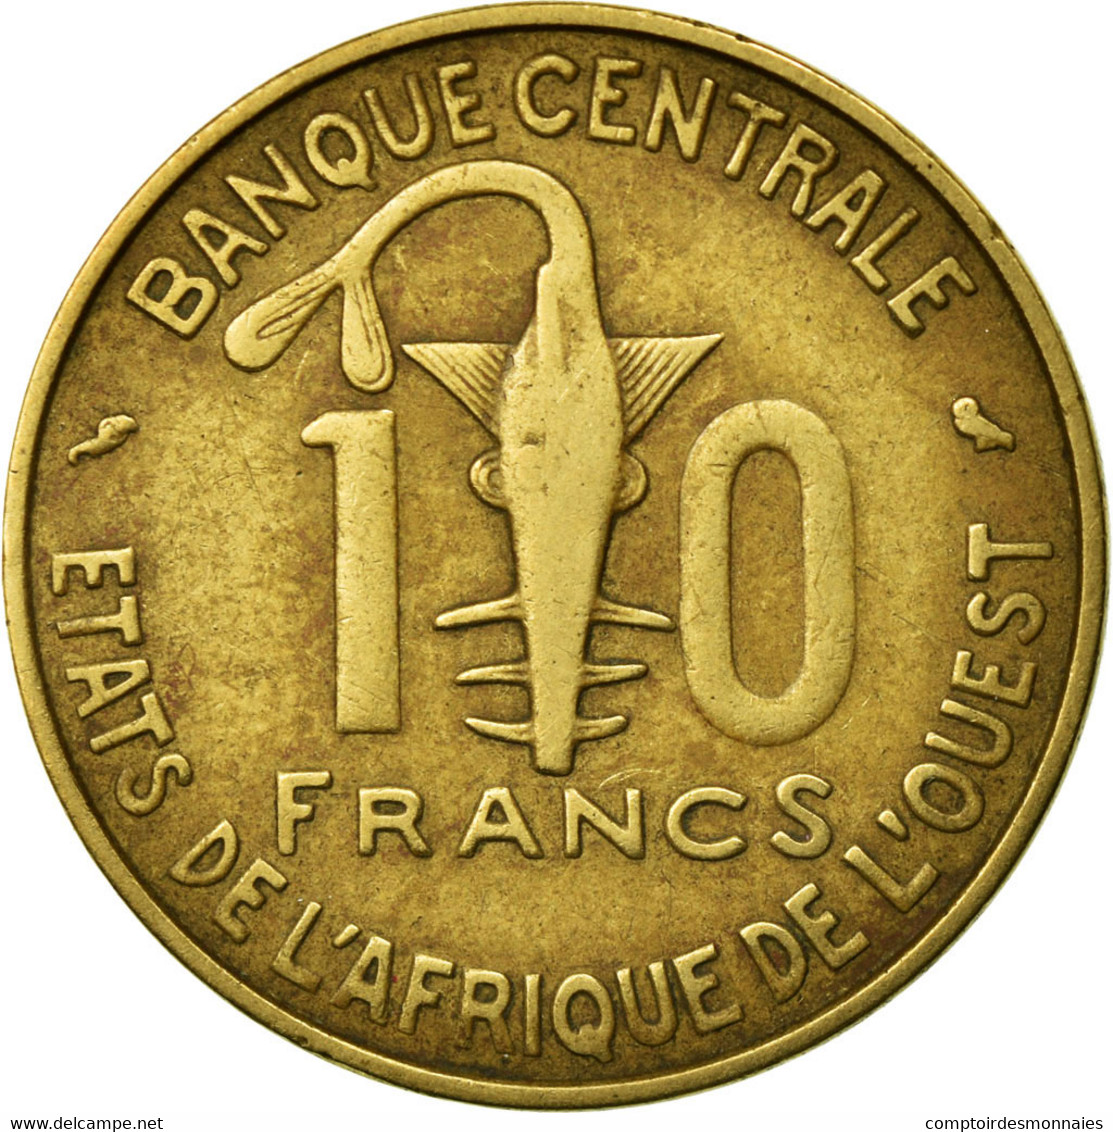 Monnaie, West African States, 10 Francs, 1974, Paris, TB+ - Ivoorkust